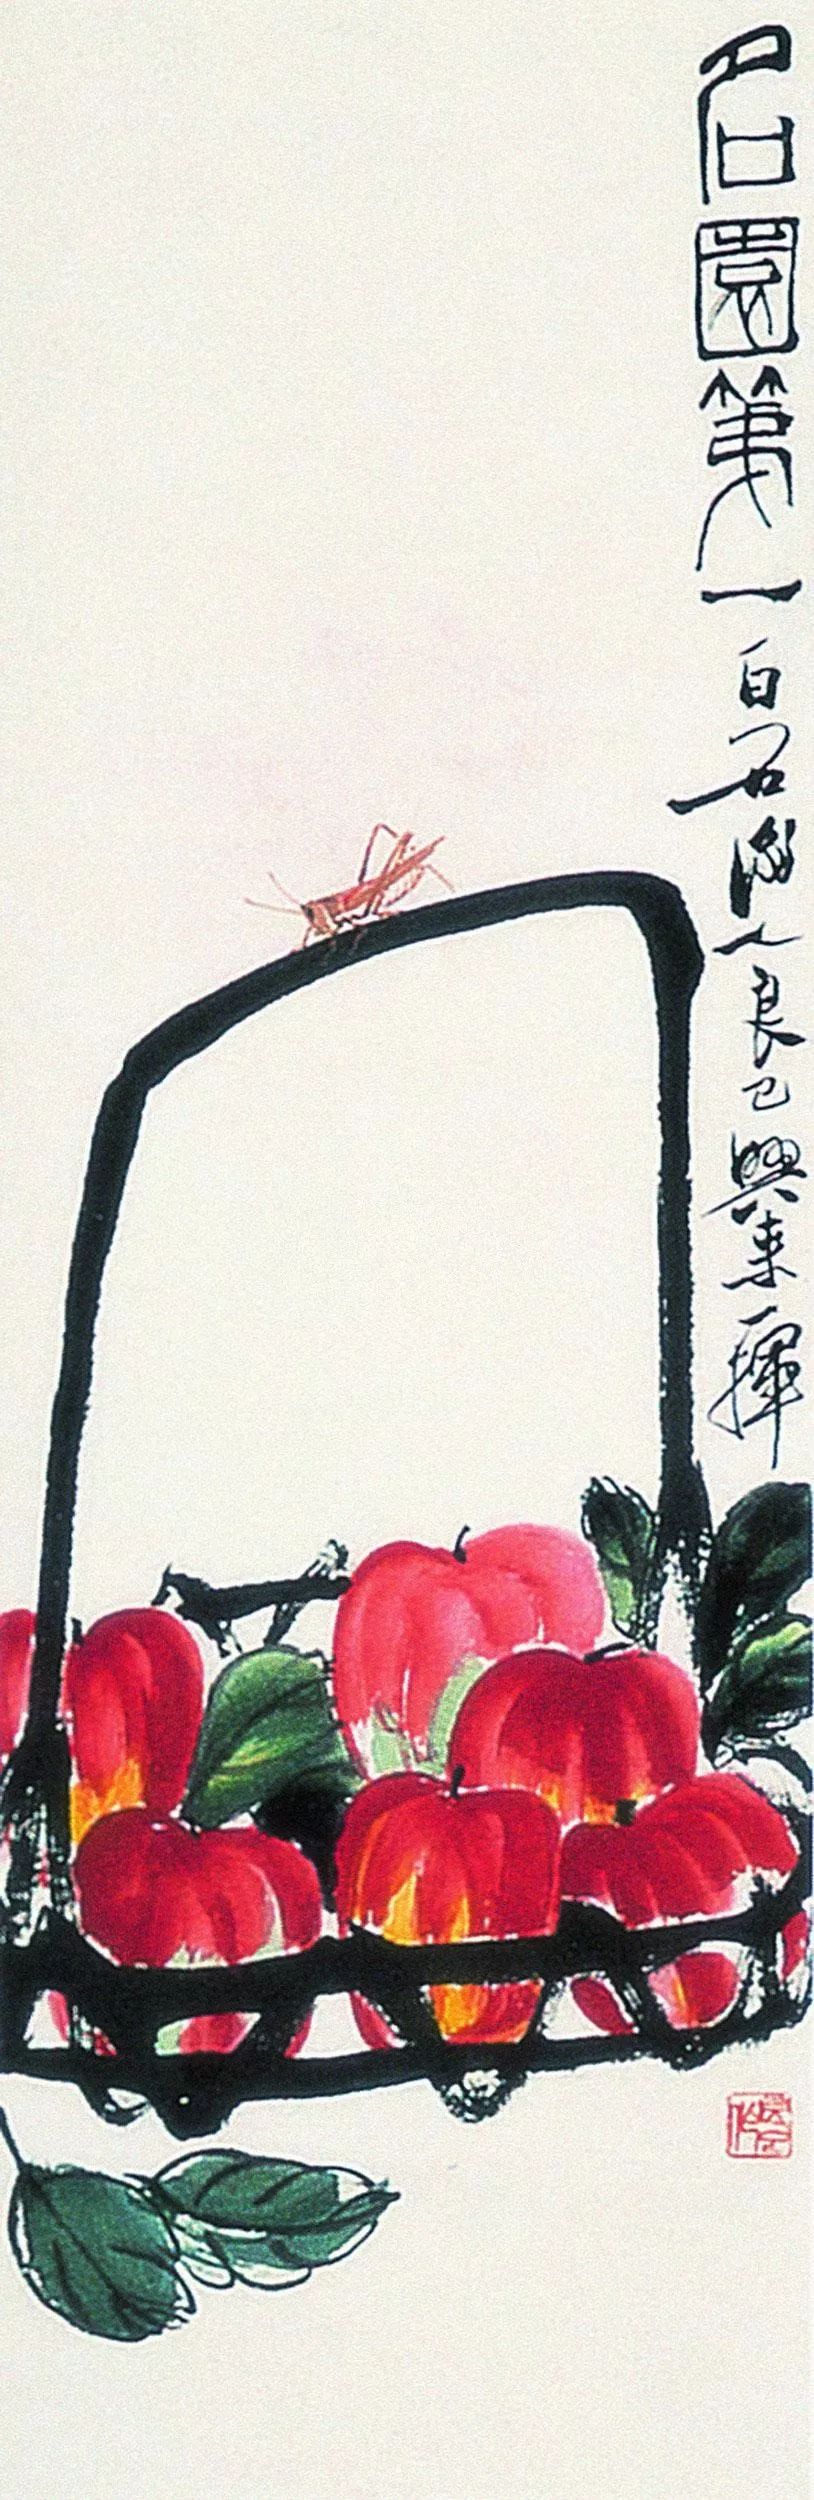 齐白石 1947年作 荔枝苹果